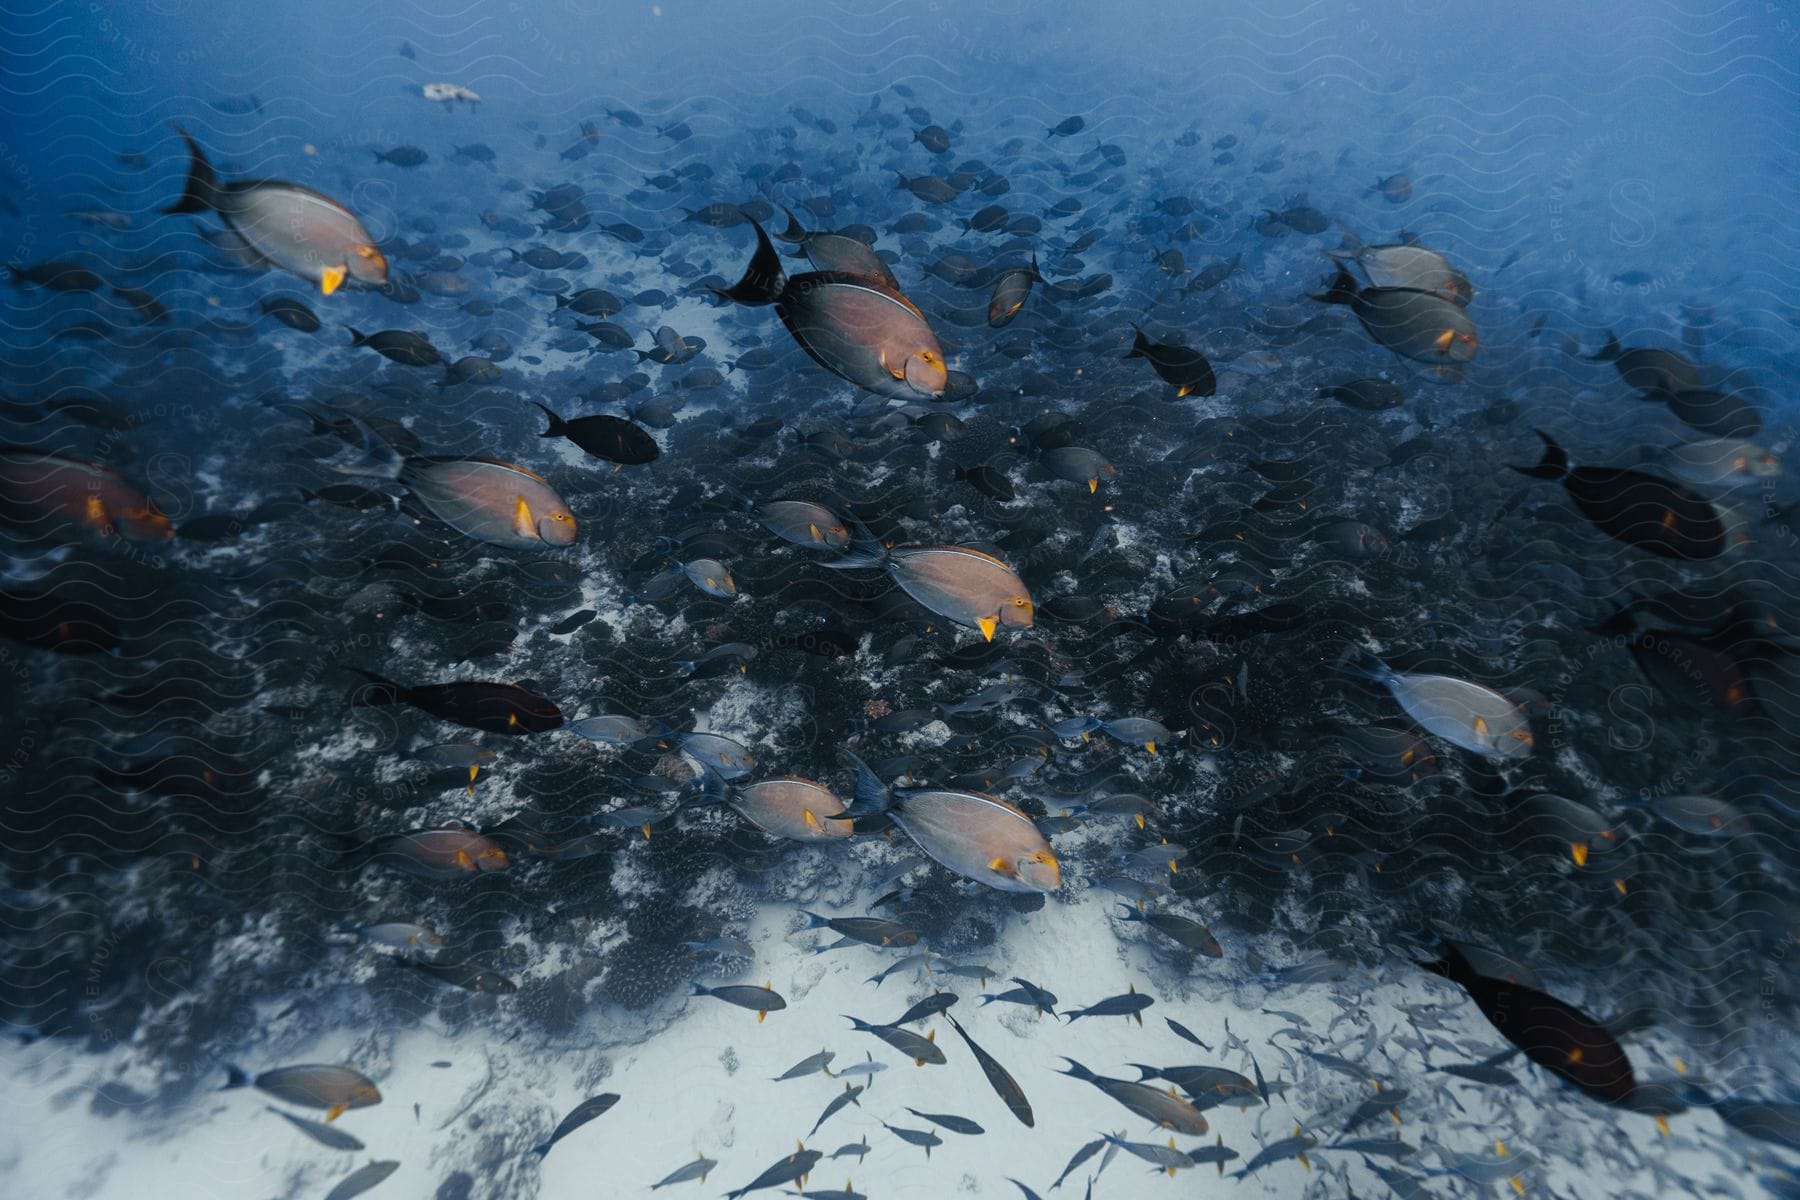 Marine life underwater scene with fish swimming in azure water